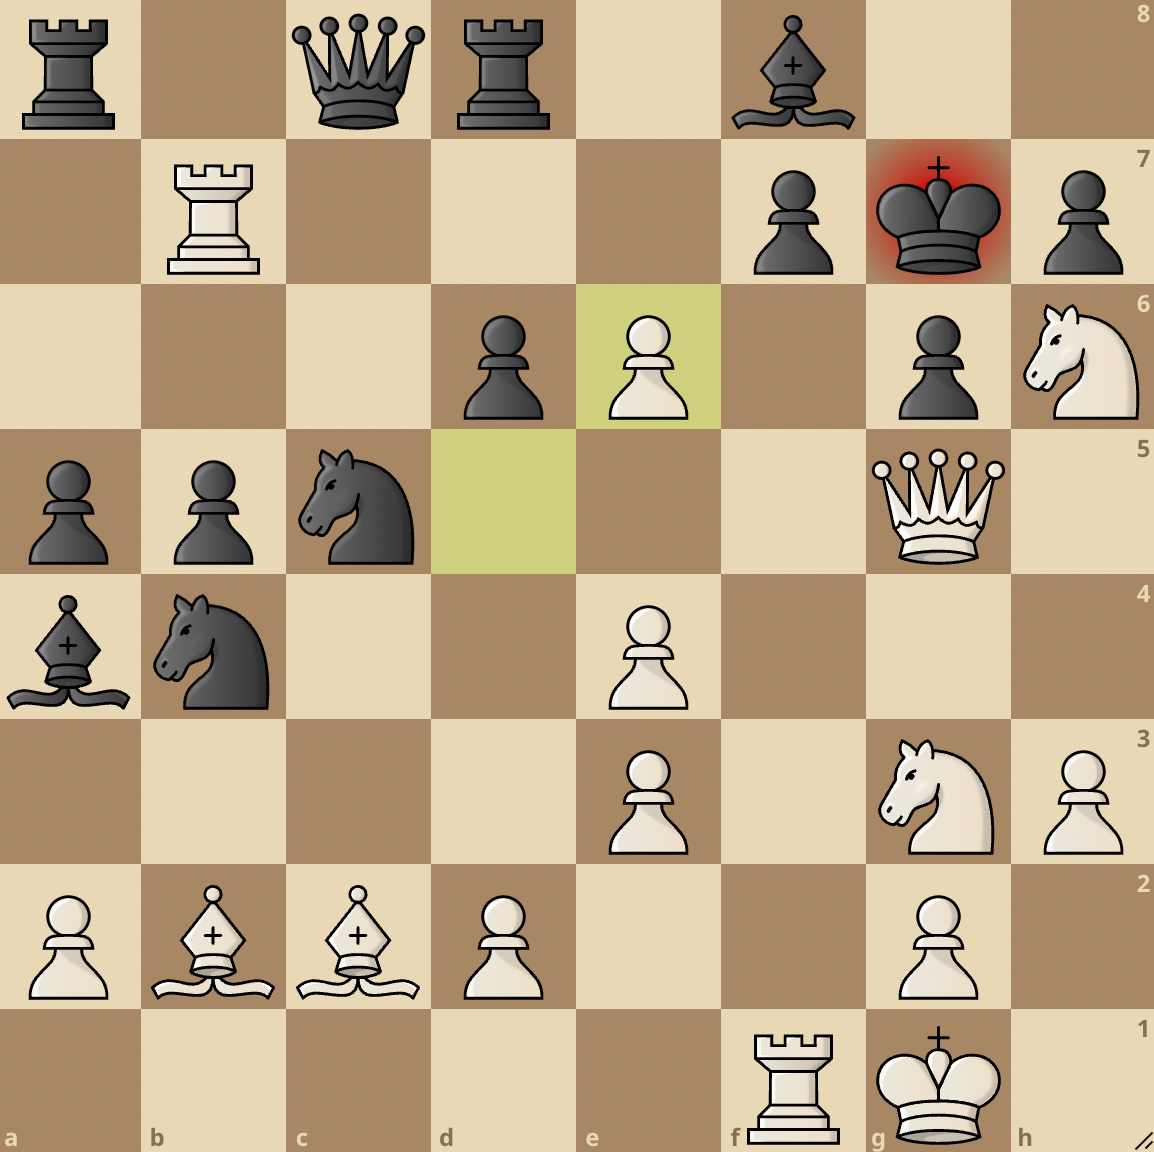 En passant in chess